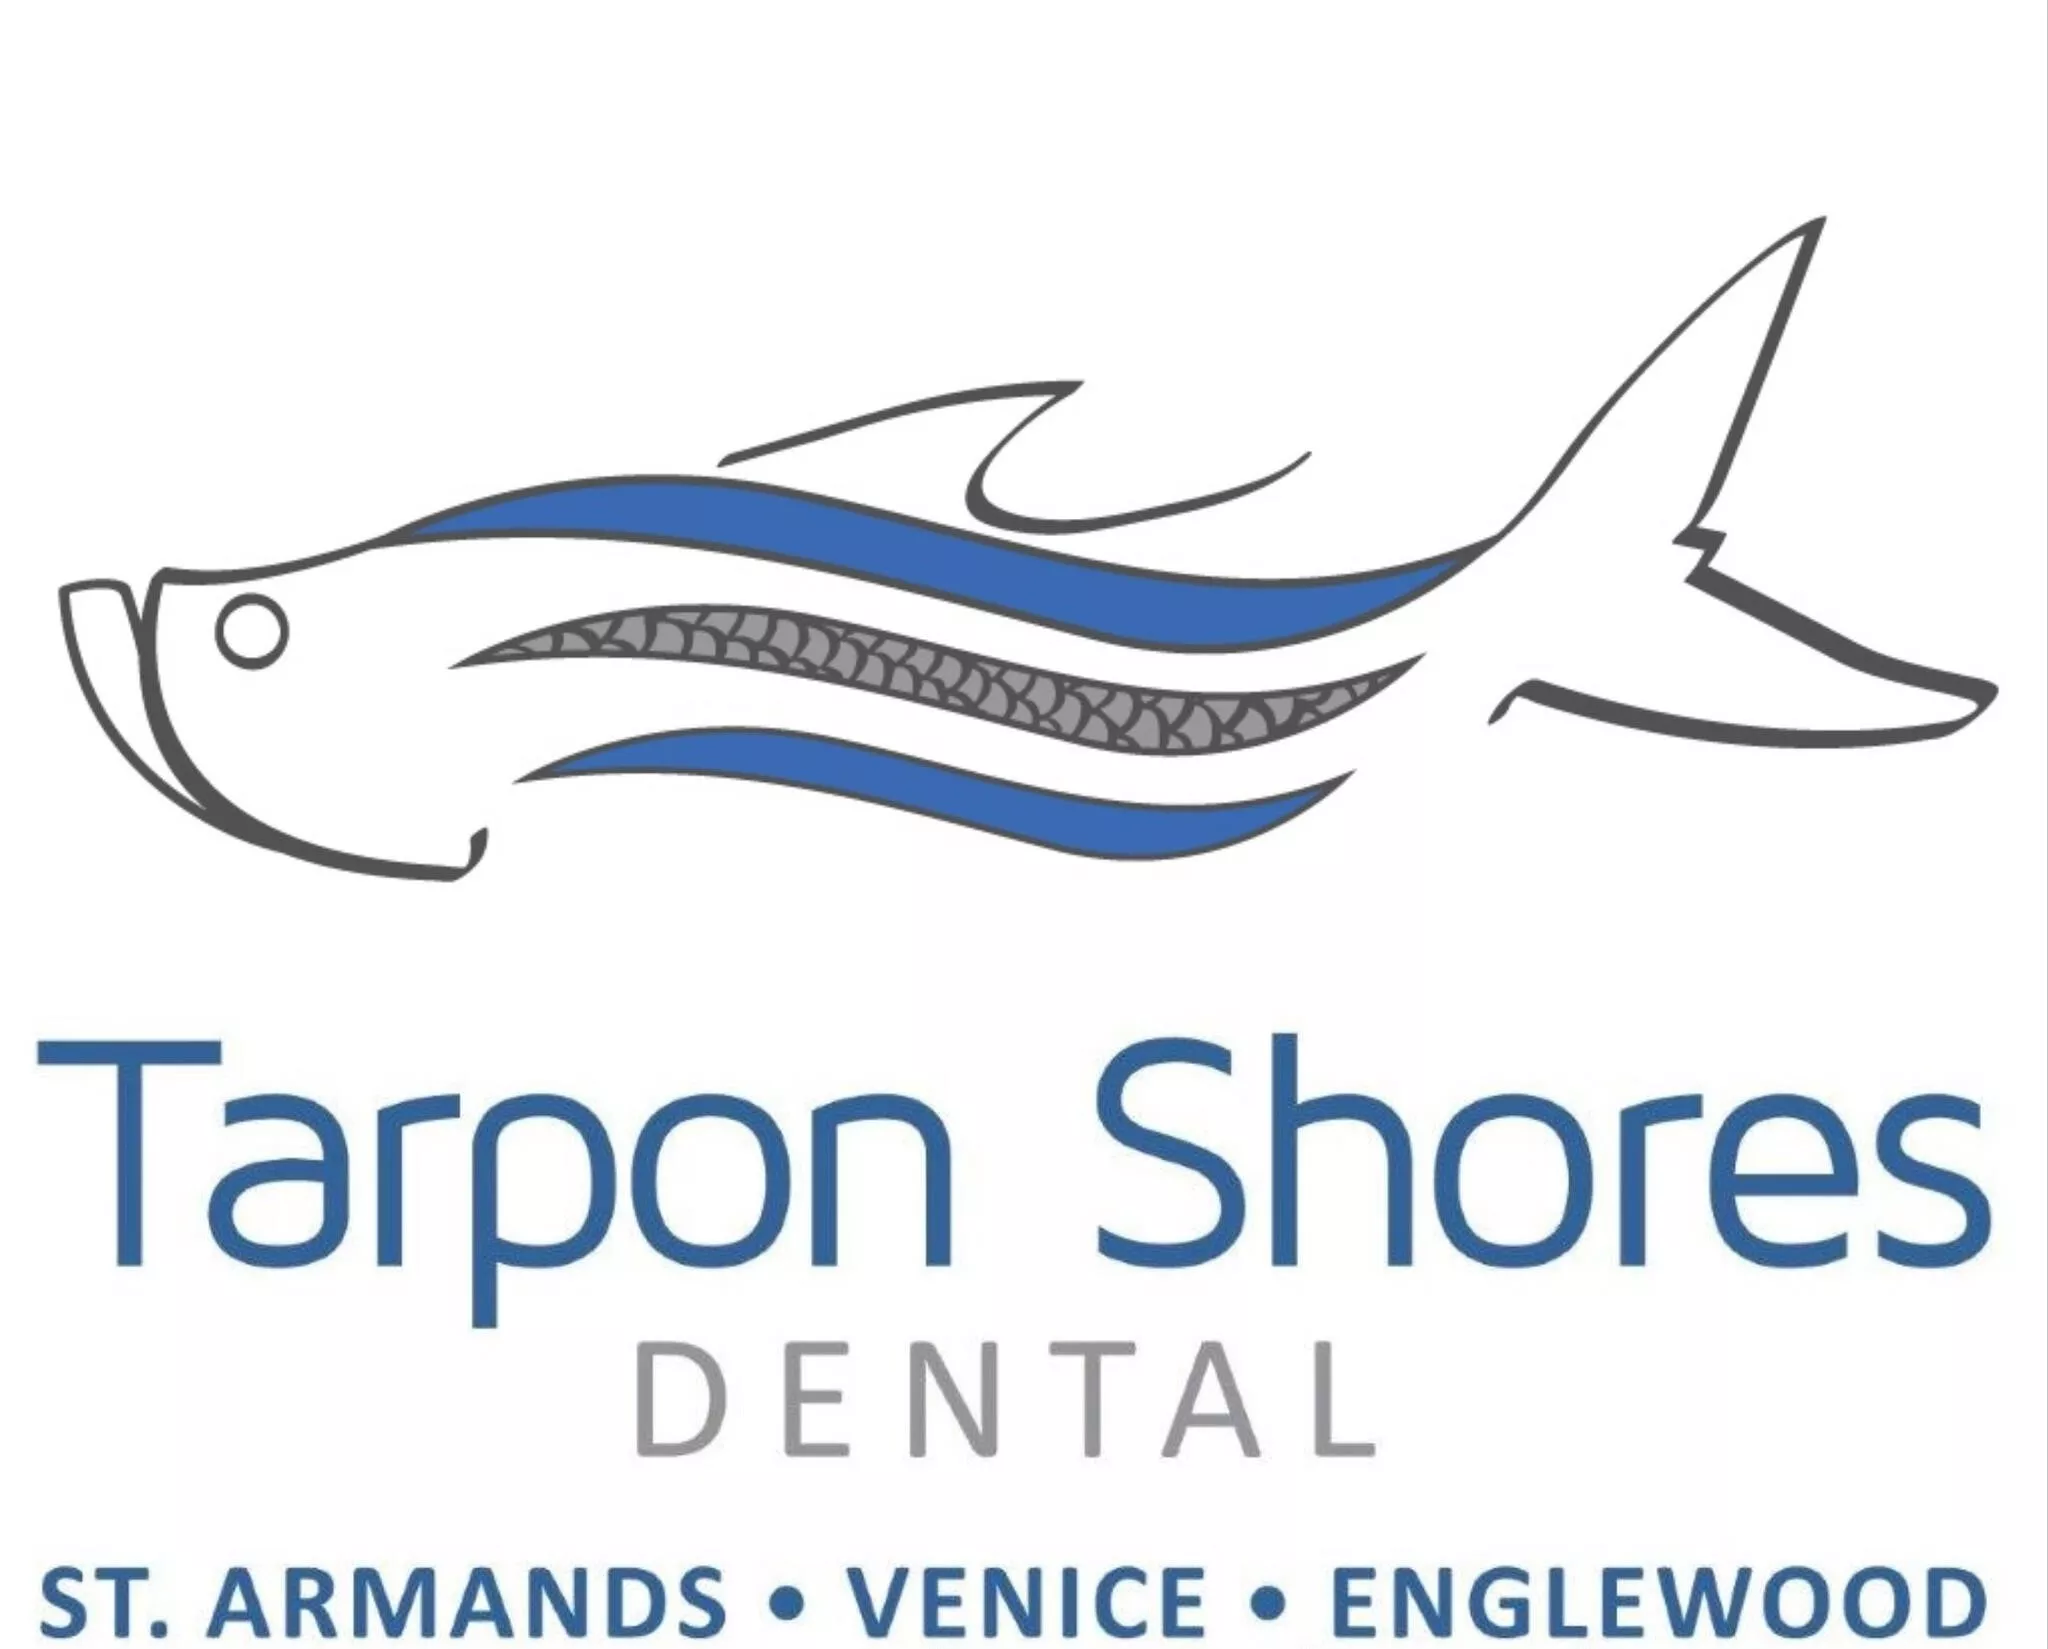 Tarpon Shores Dental logo